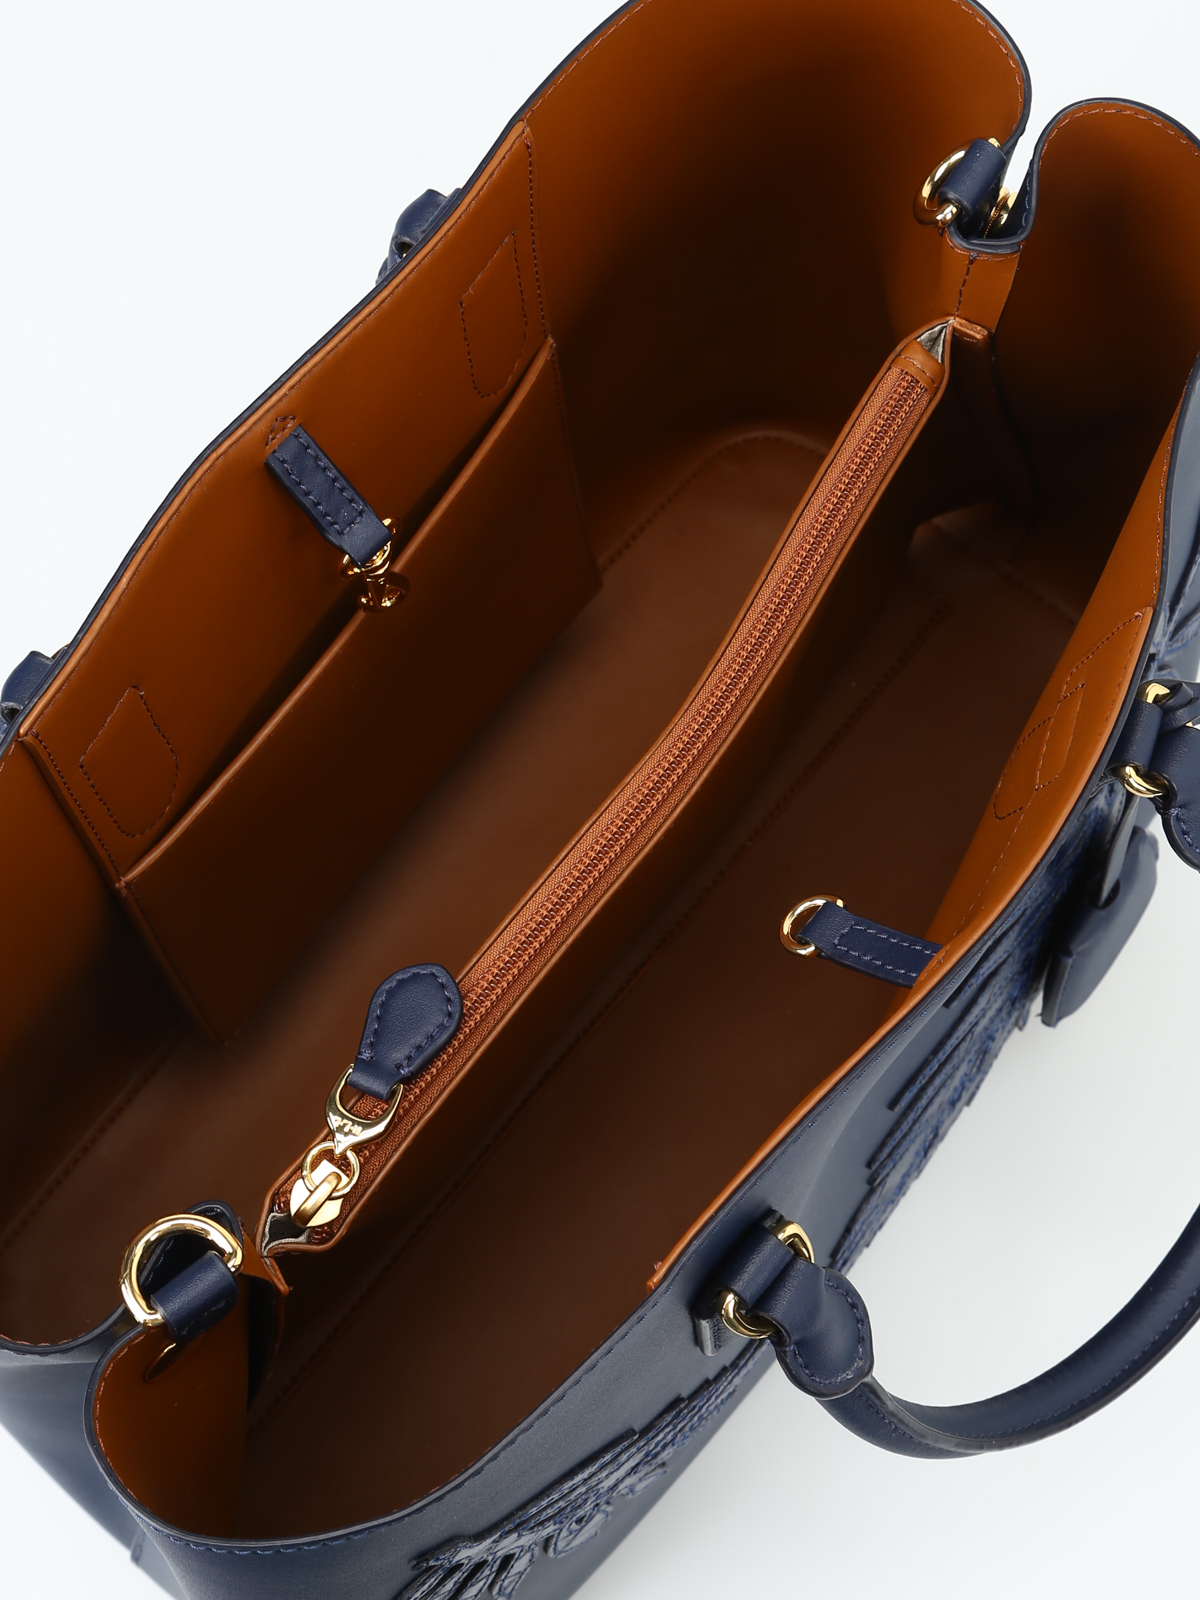 Handbags Ralph Lauren, Style code: 431876725004-C267